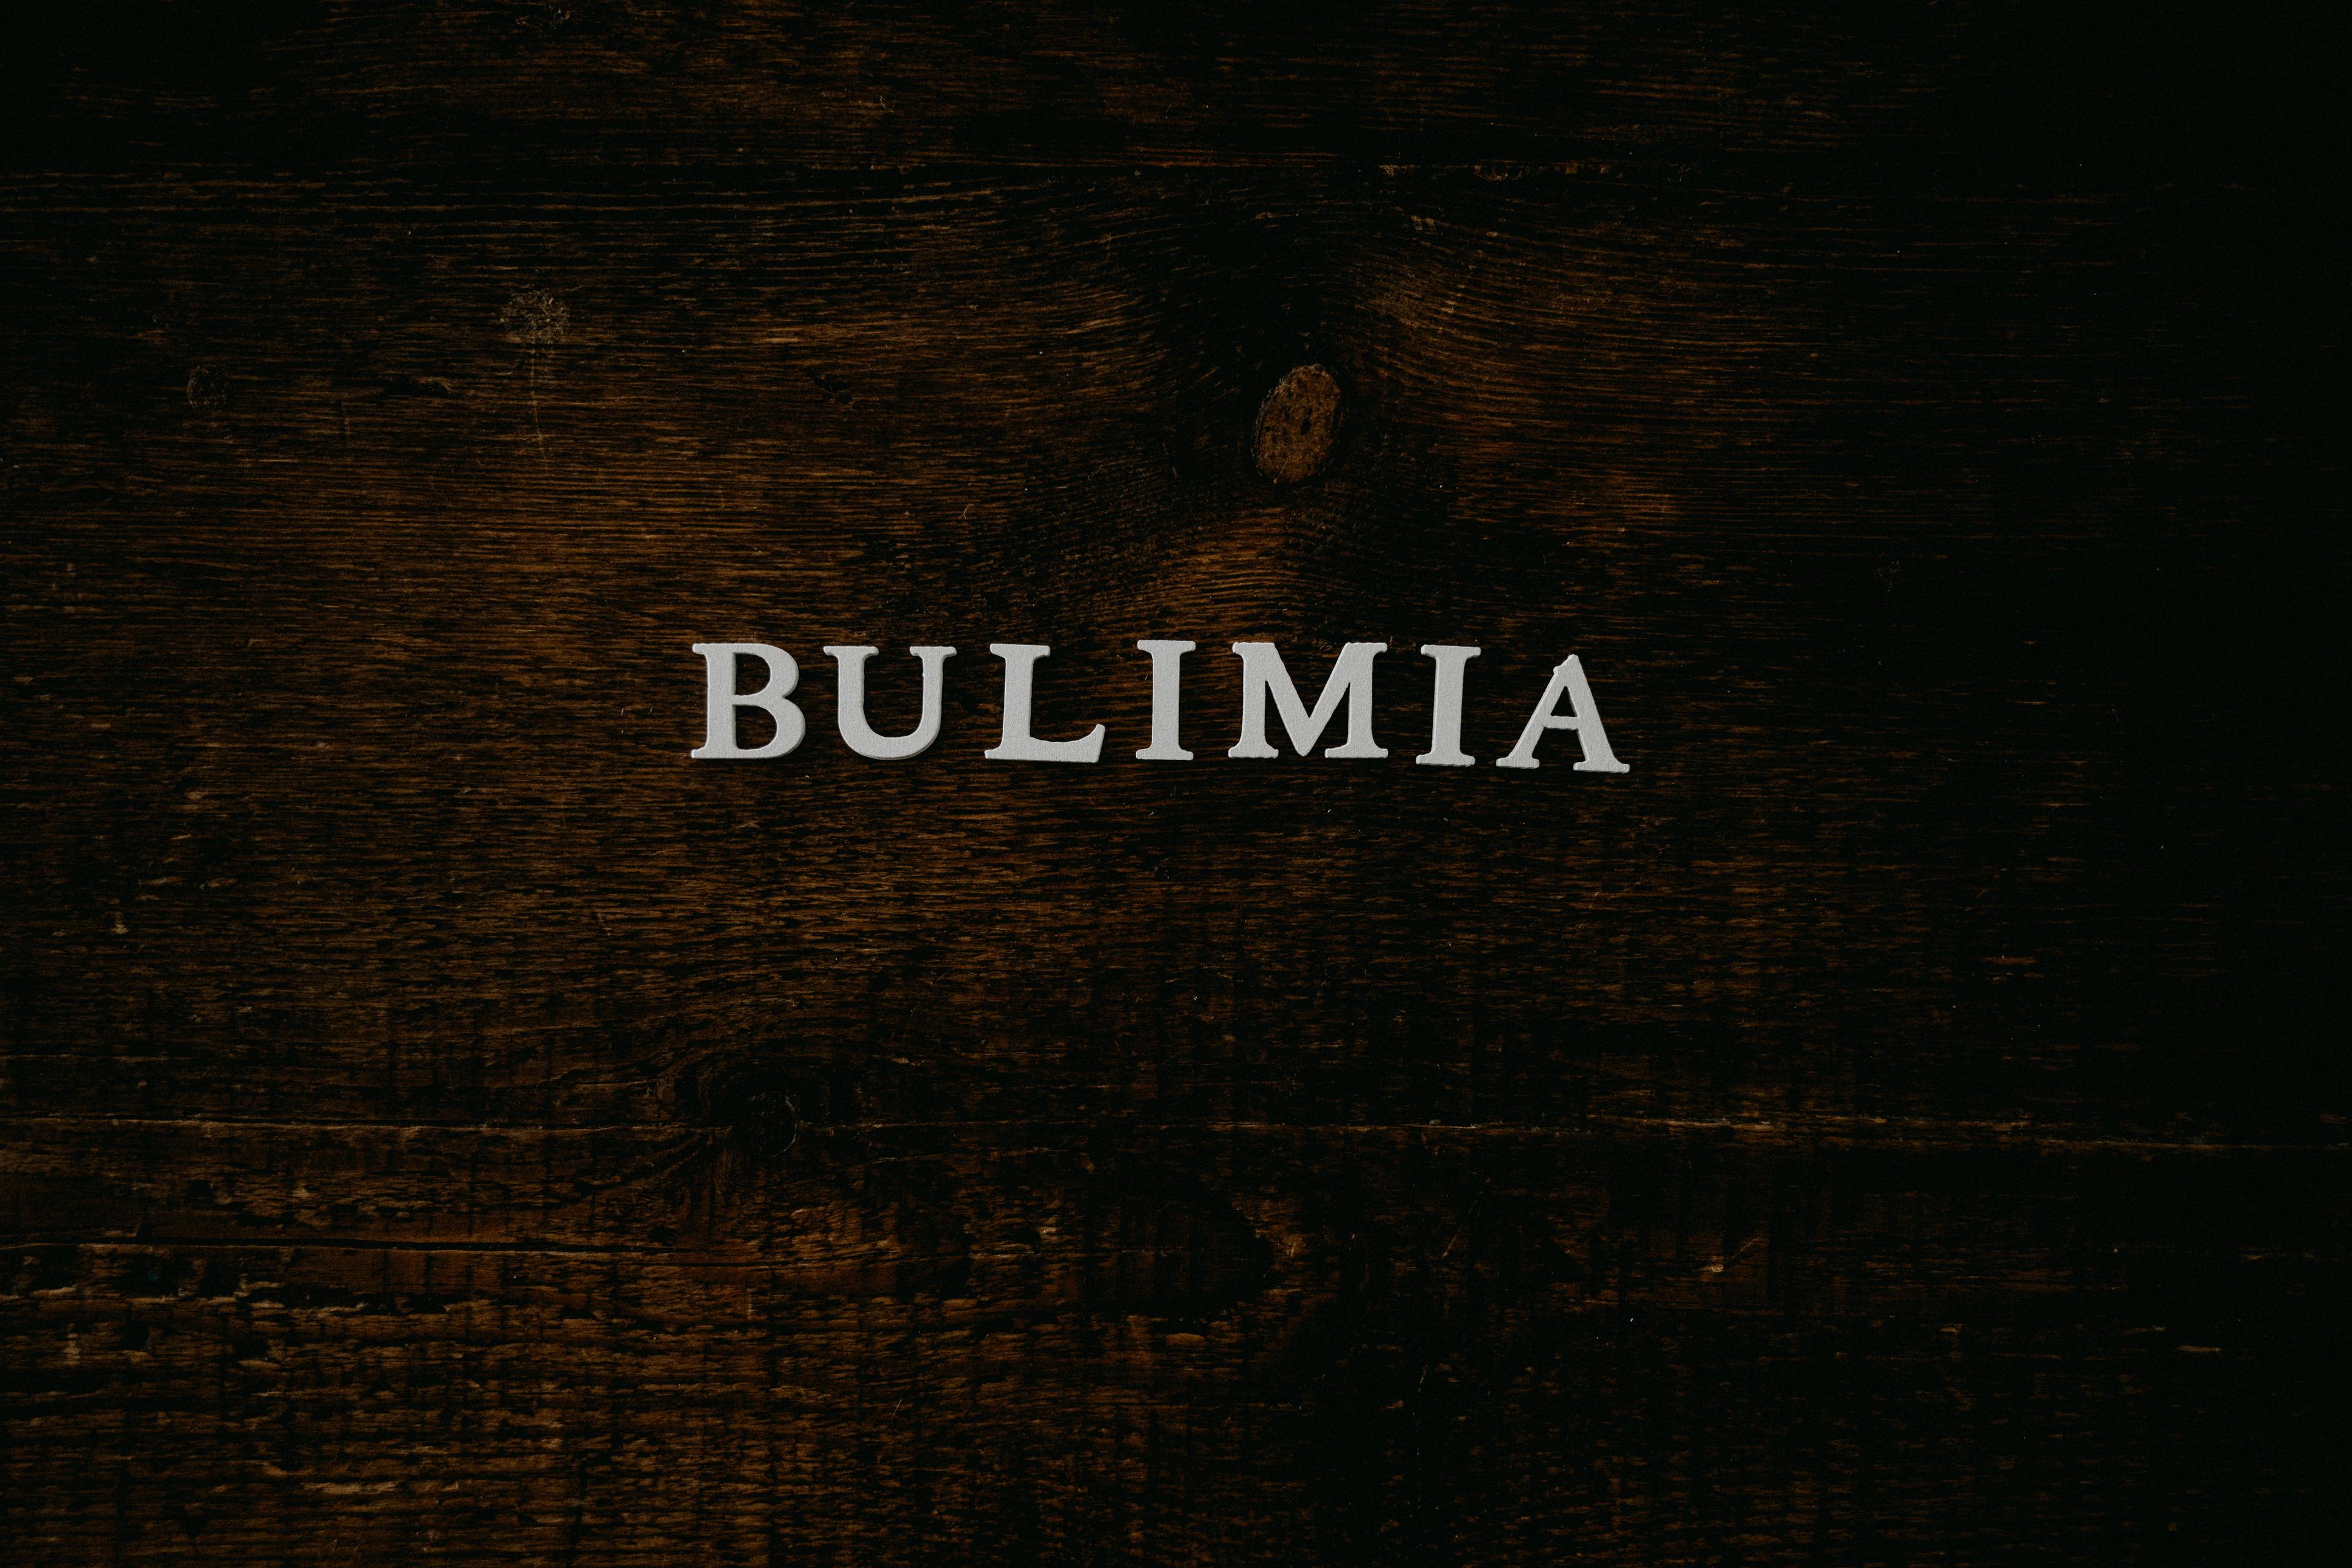 Bulimia - objawy. Jak wygląda zmaganie z bulimią? Objawy i leczenie, skutki bulimii. Jak pomóc osobie z bulimią? Na czym polega bulimia